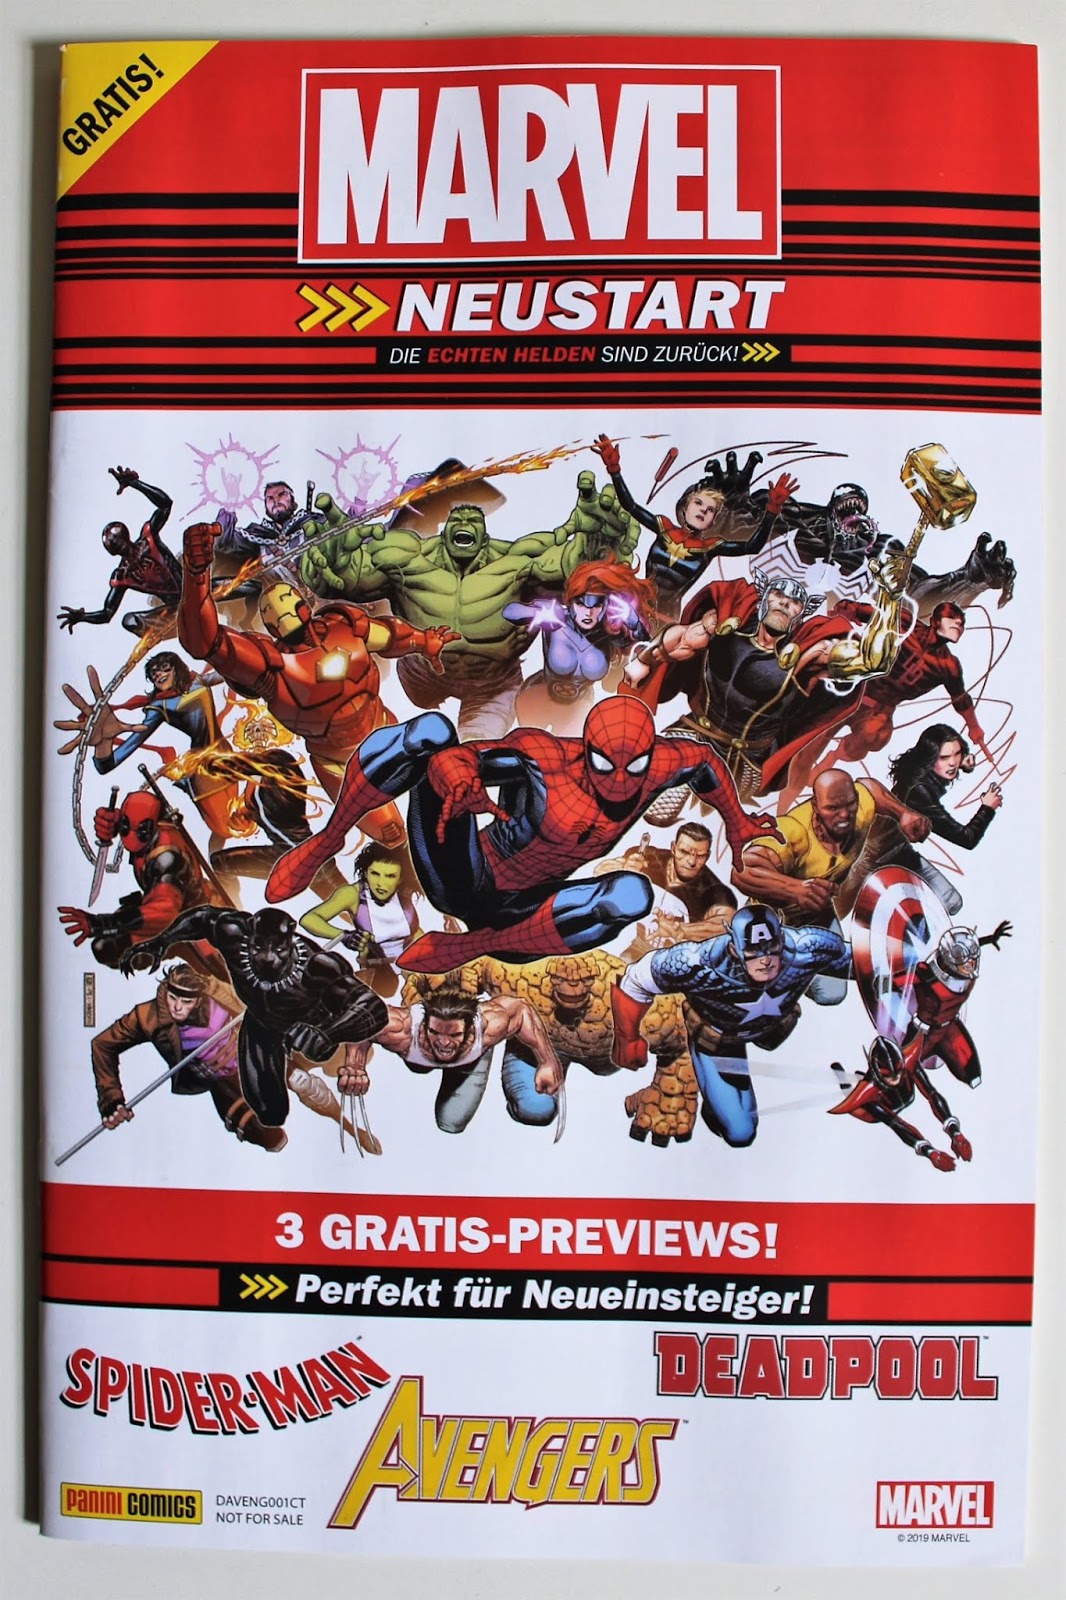 Marvel Marvel Neustart Preview German Comic